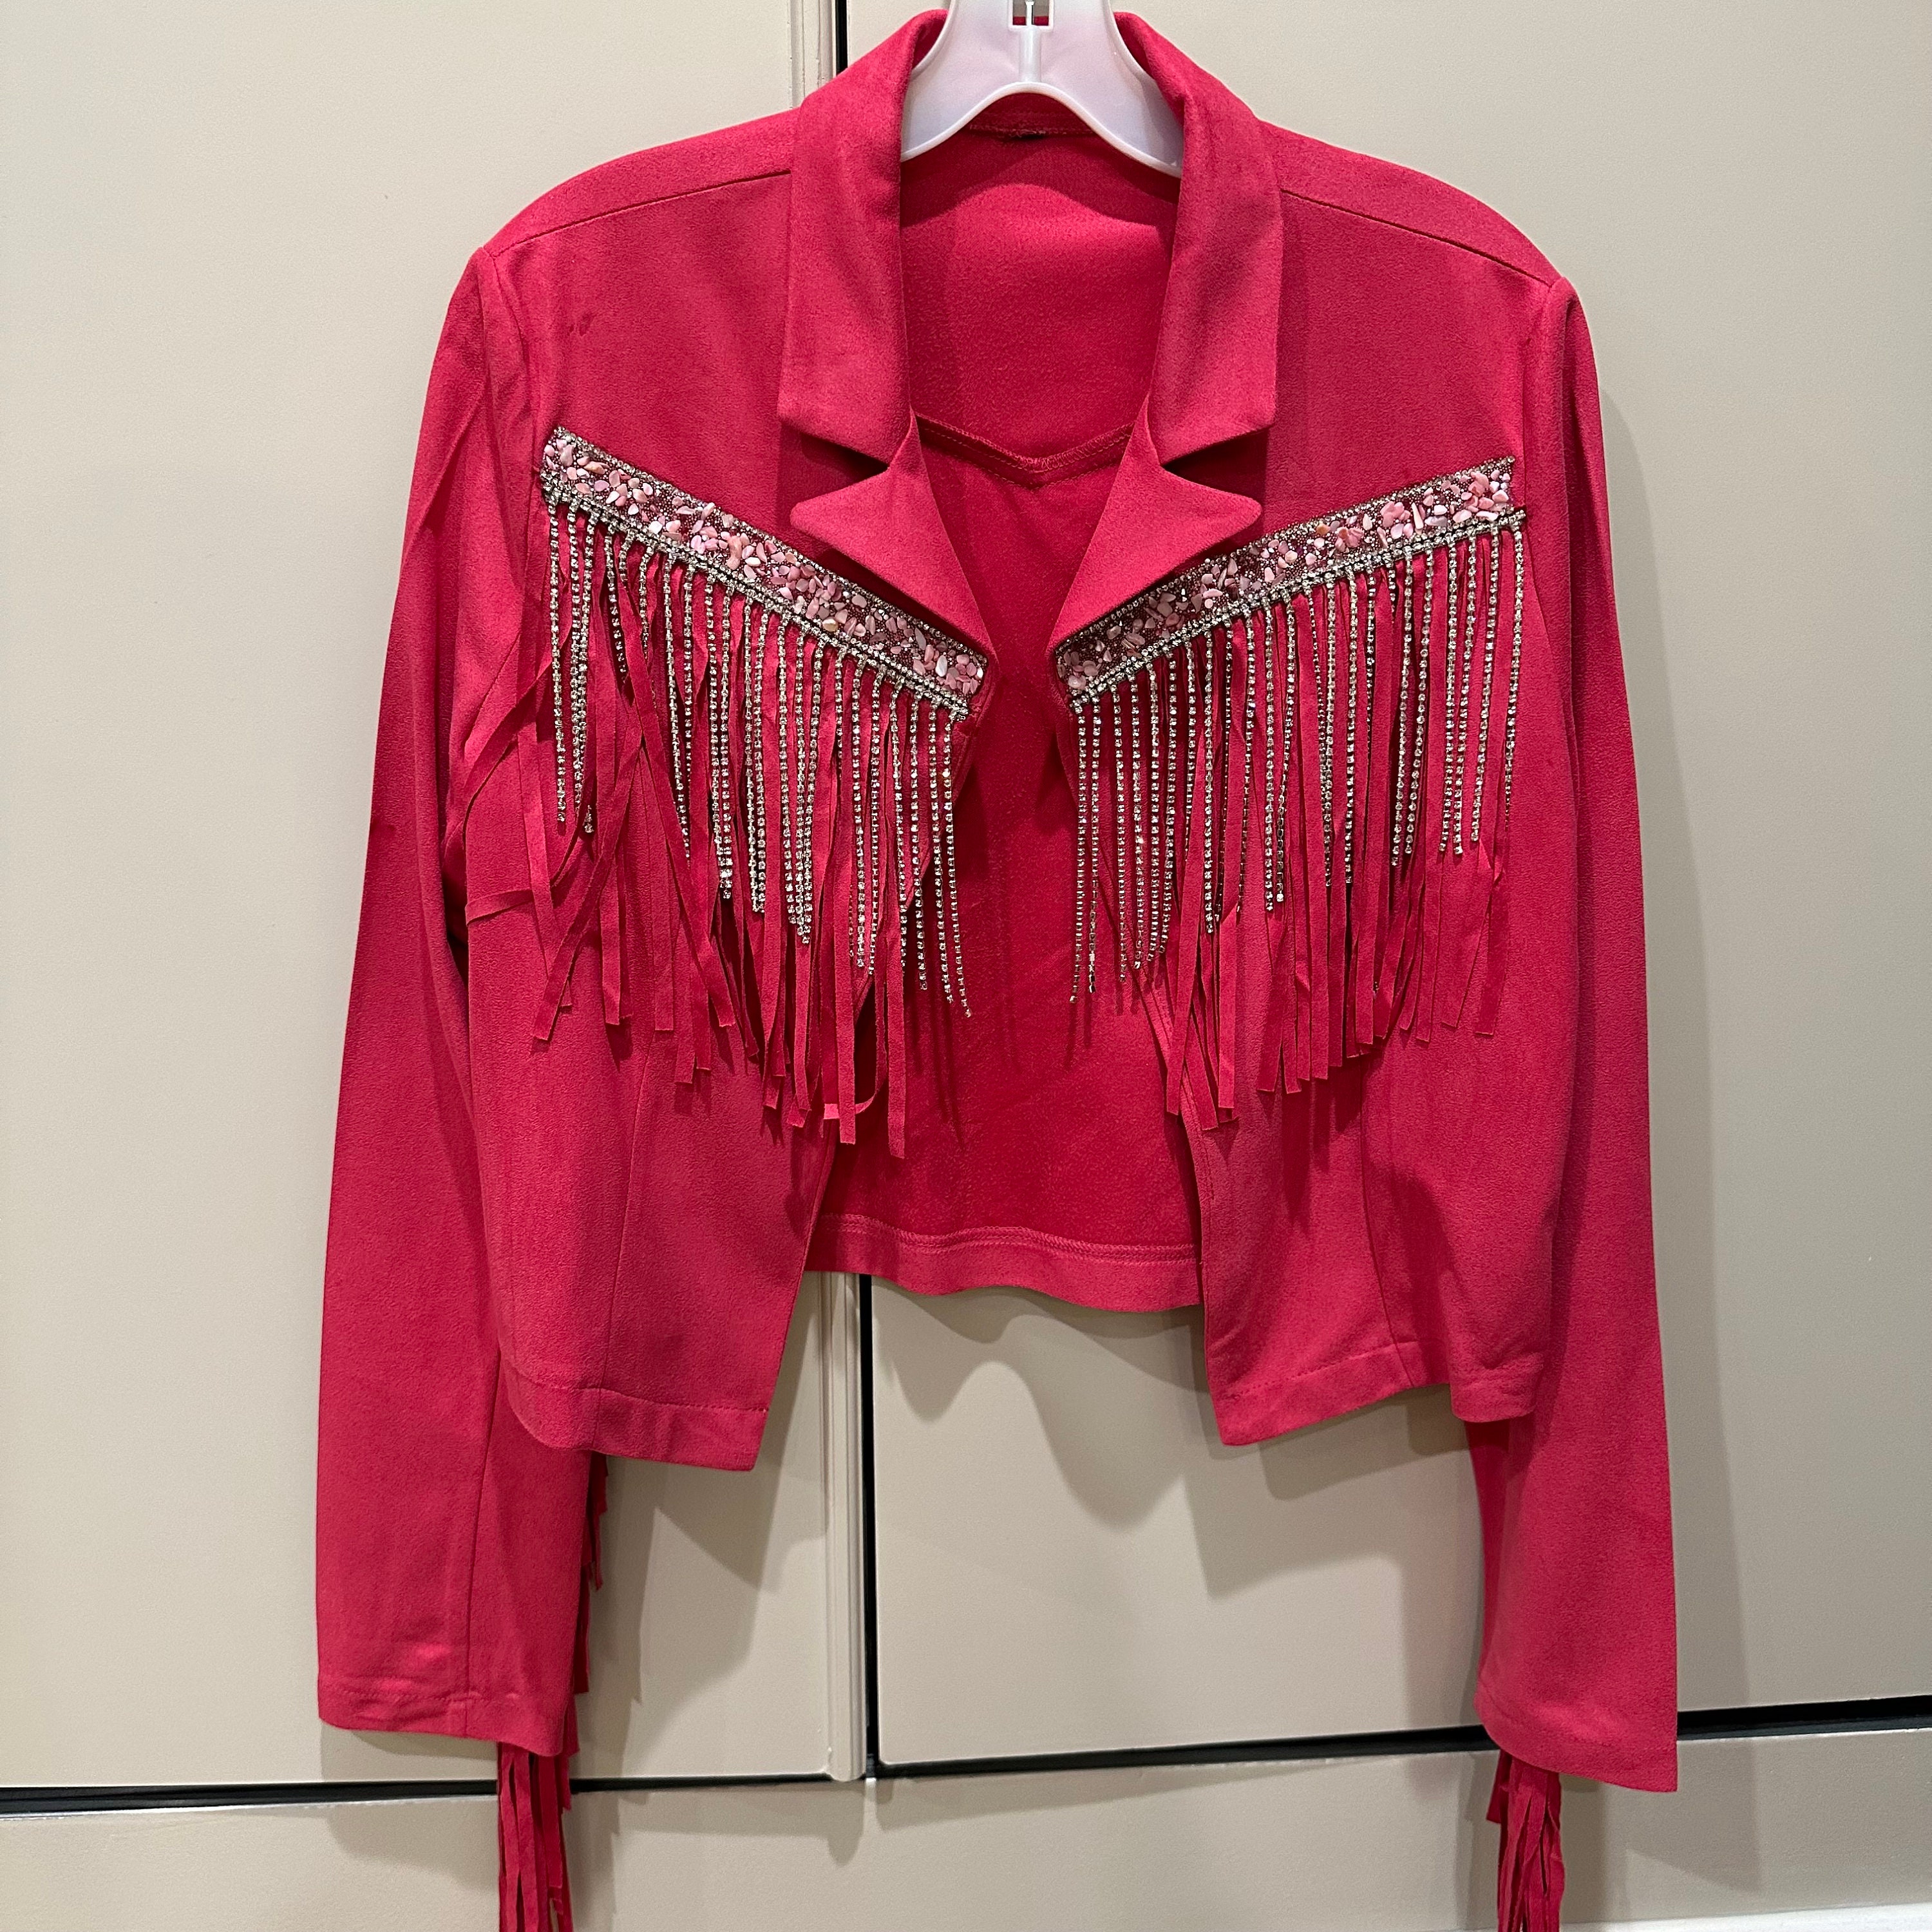 Hot Pink Fringe Cropped Jacket - blendedvintagemarketplace